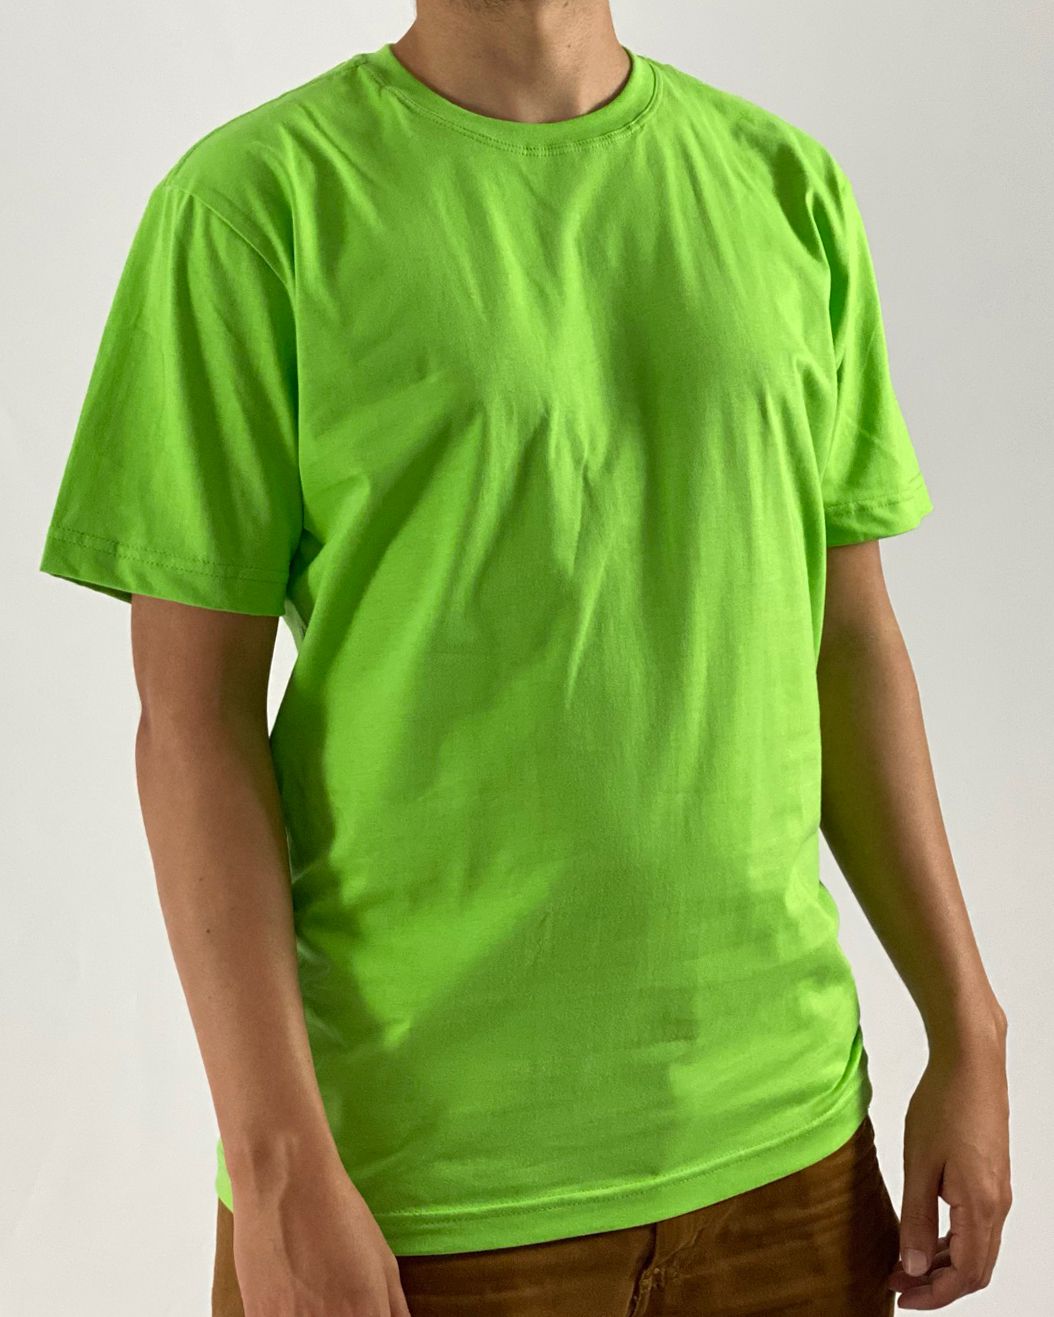 Camisetas Elite Verde Limão - Compre Já